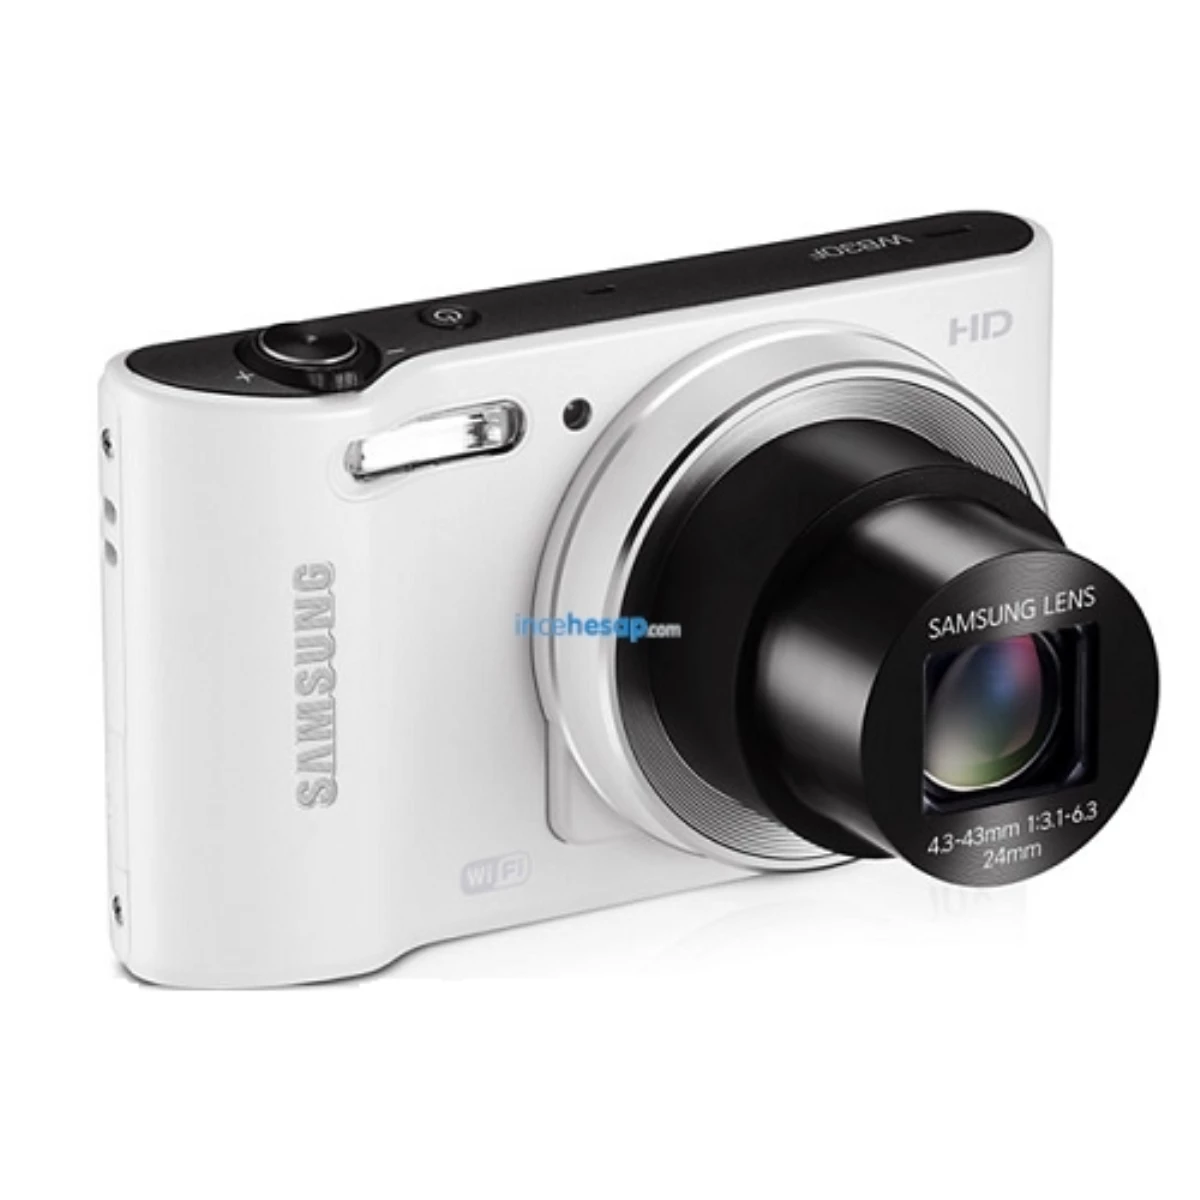 Samsung Wb30f Dijital Fotoğraf Makinesi Beyaz+çanta Hediyeli(Beyaz)